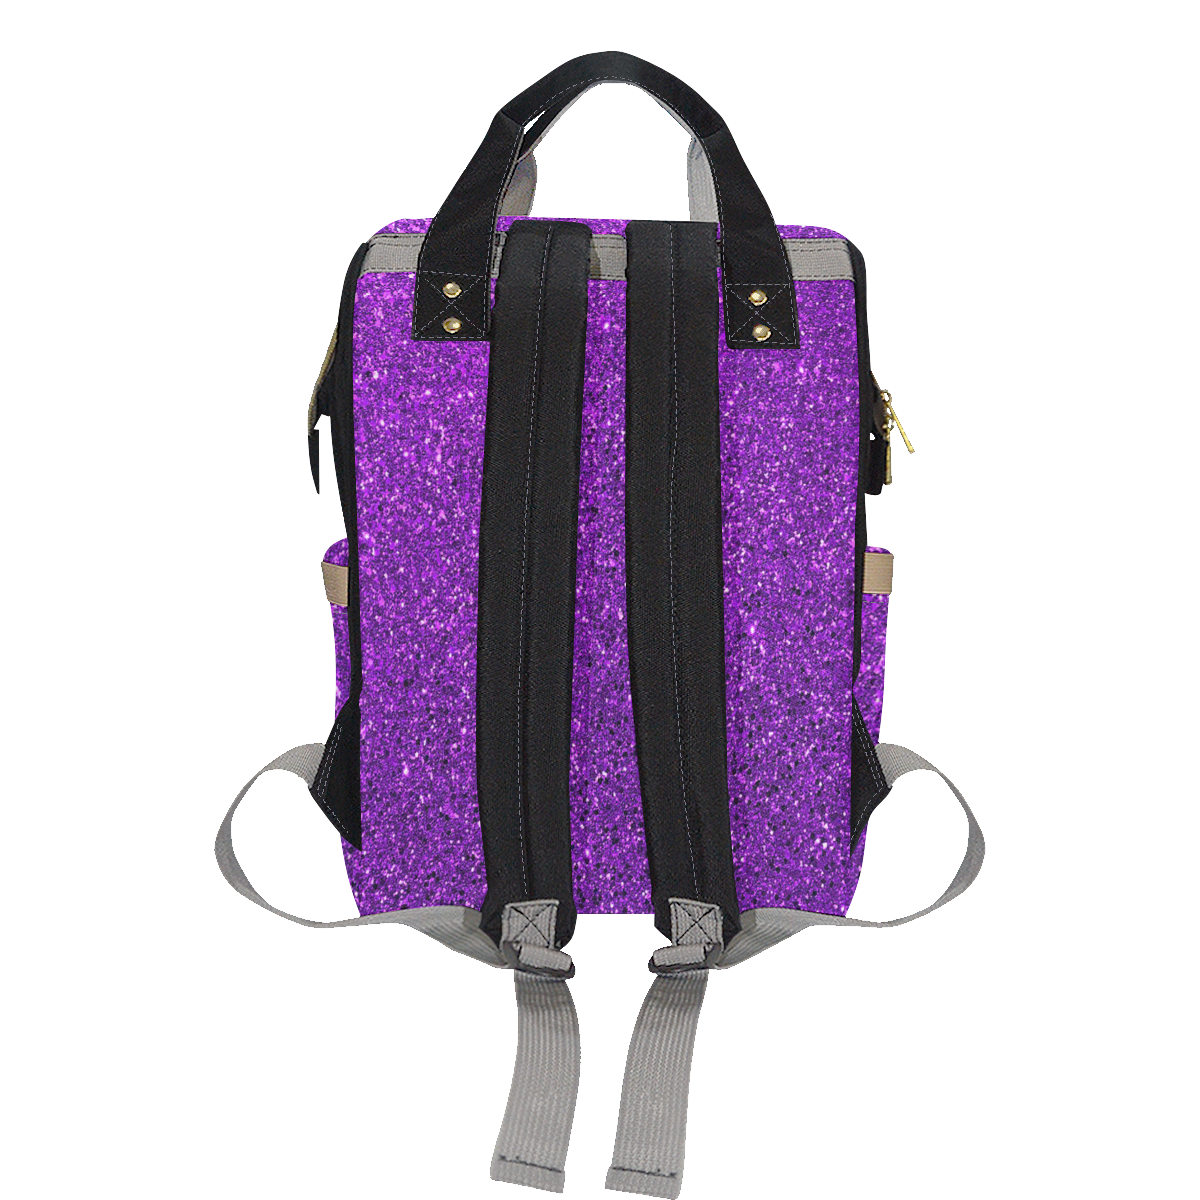 Purple Glitter Multi-Function Diaper Backpack/Diaper Bag (Model 1688)